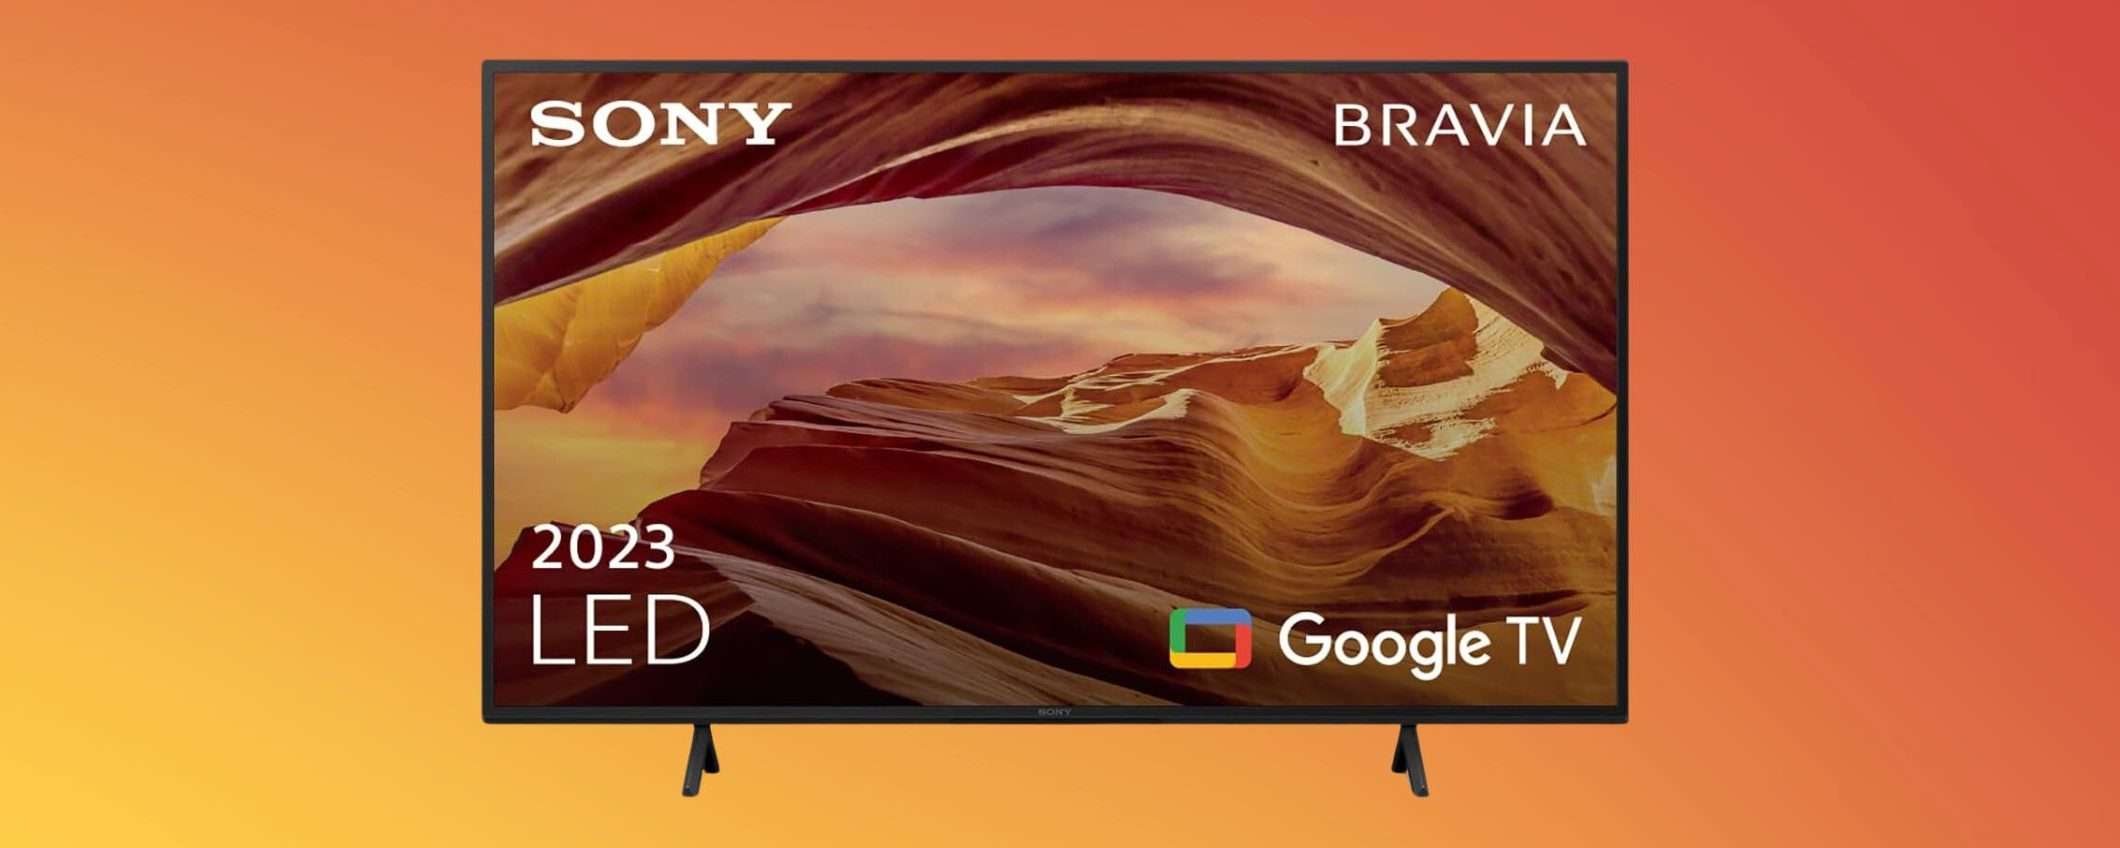 Smart TV Sony Bravia 43